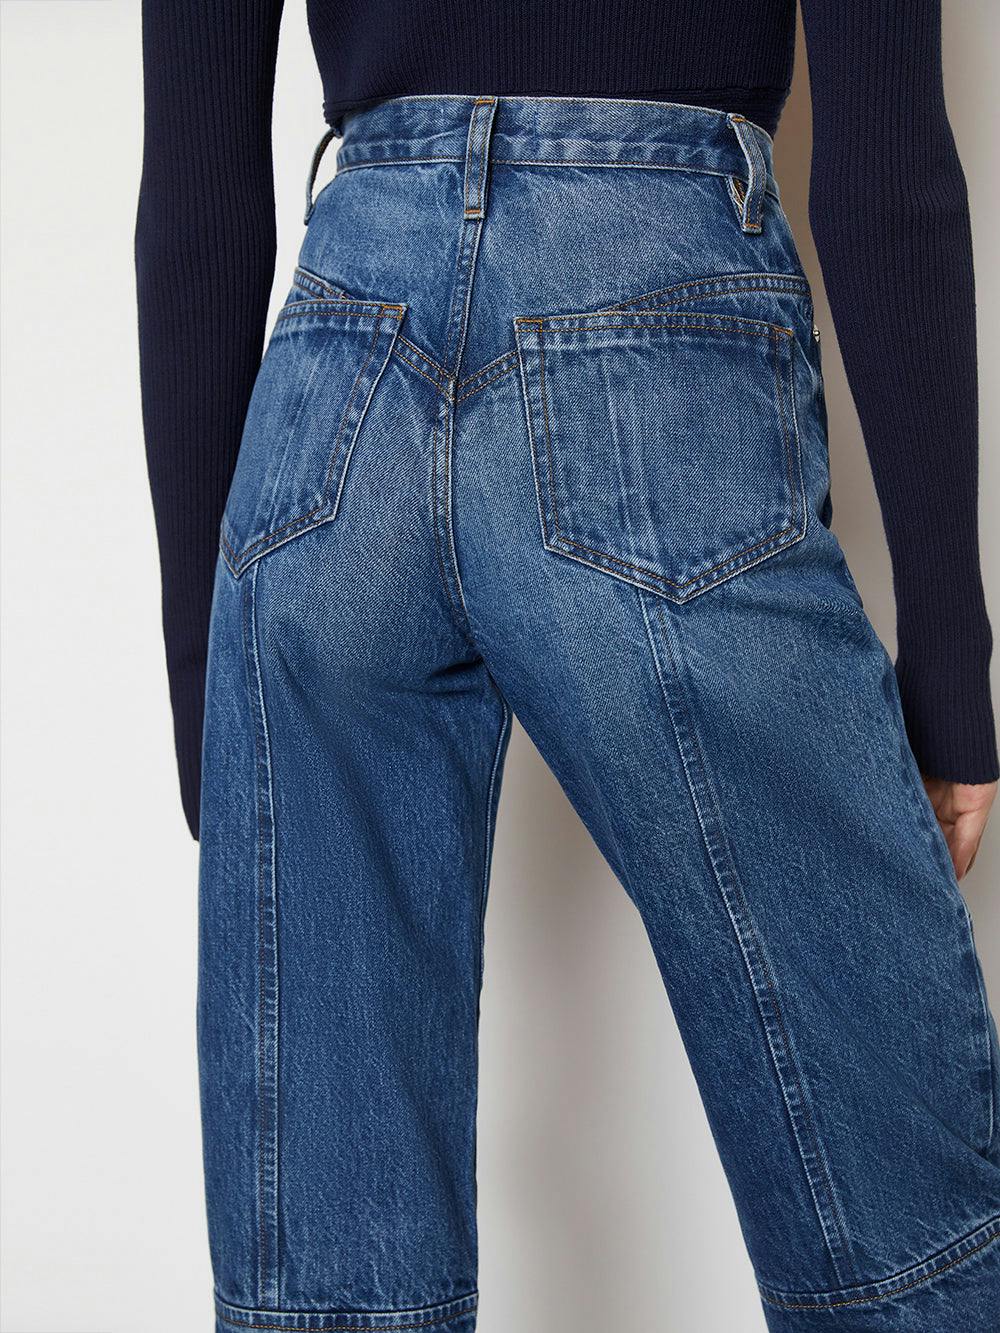 jeans back view alt:hover